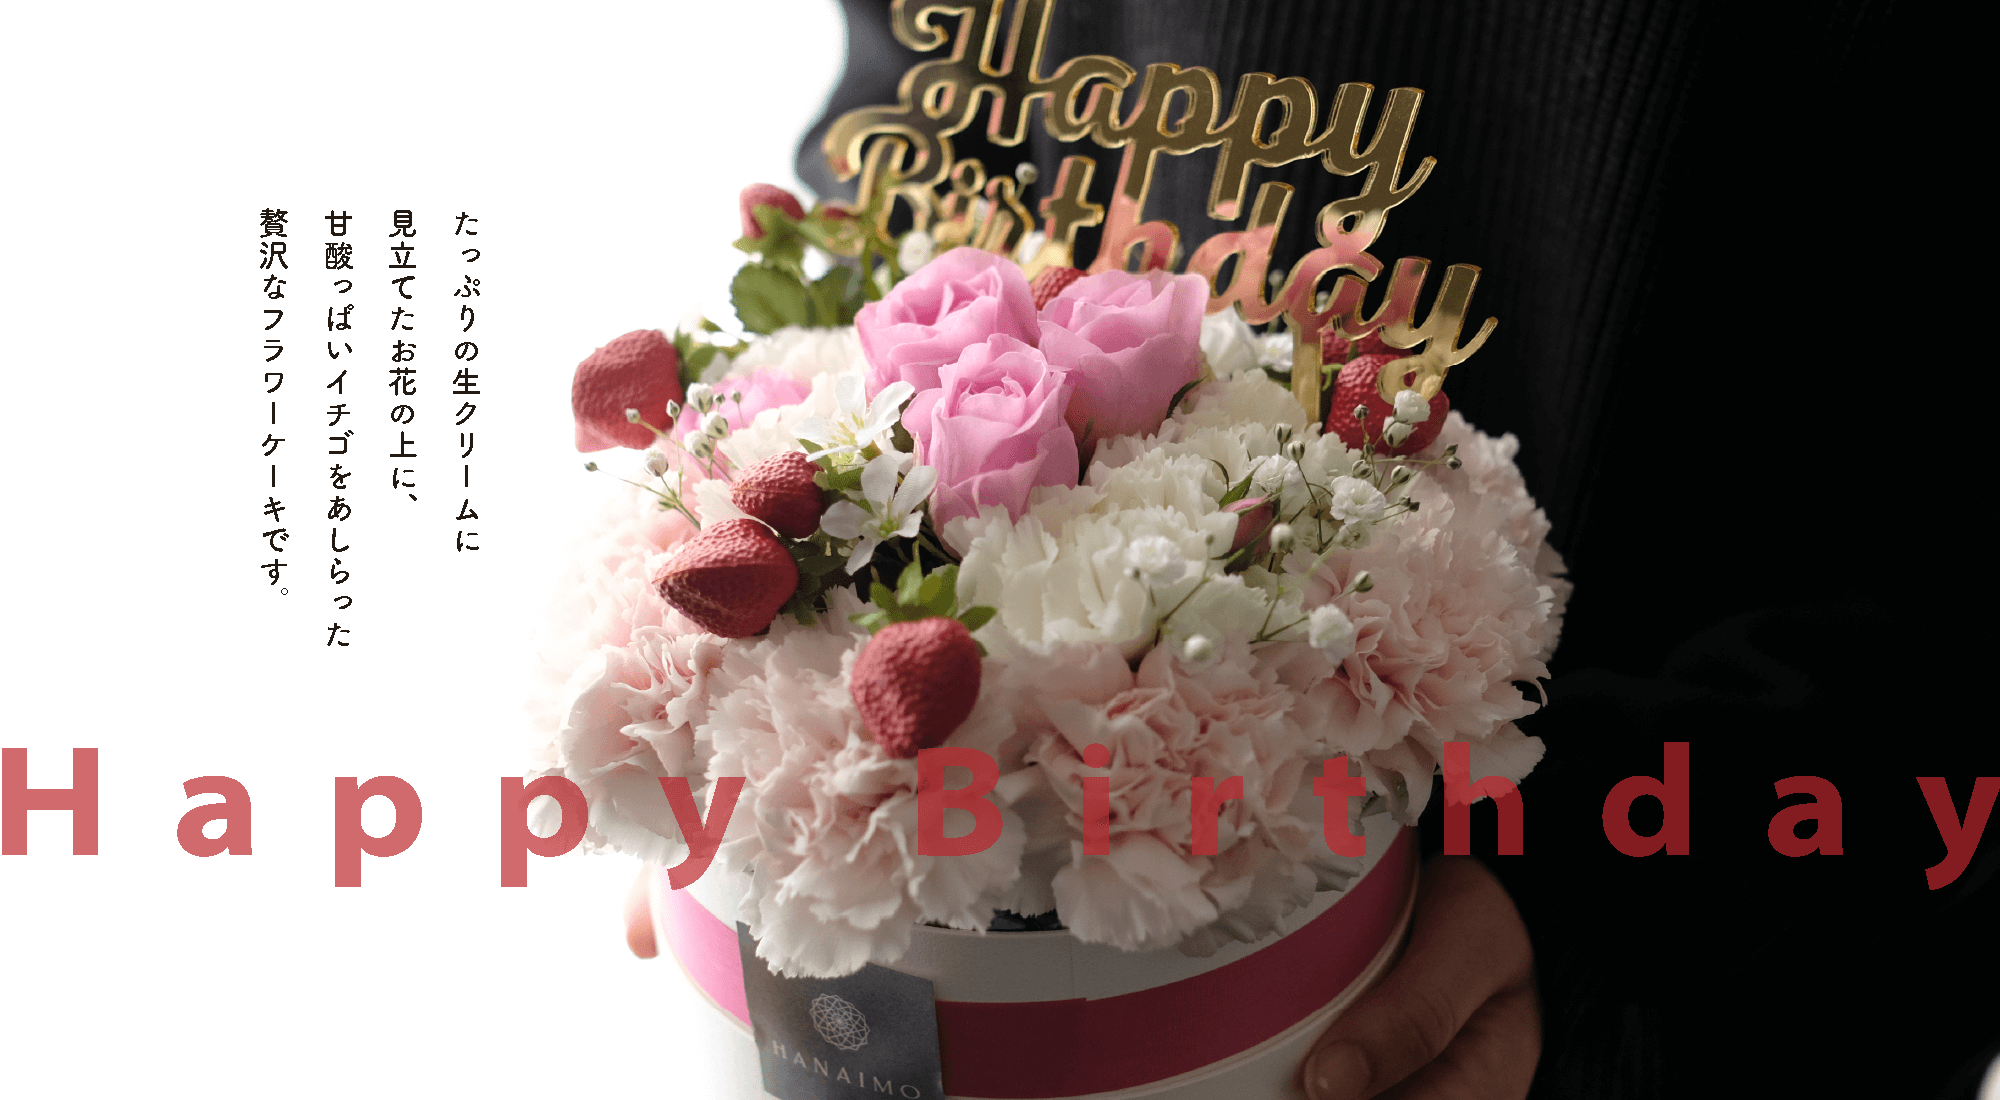 Happy Birthday たっぷりの生クリームに見立てたお花の上に甘酸っぱいイチゴをあしらった贅沢なフラワーケーキです。